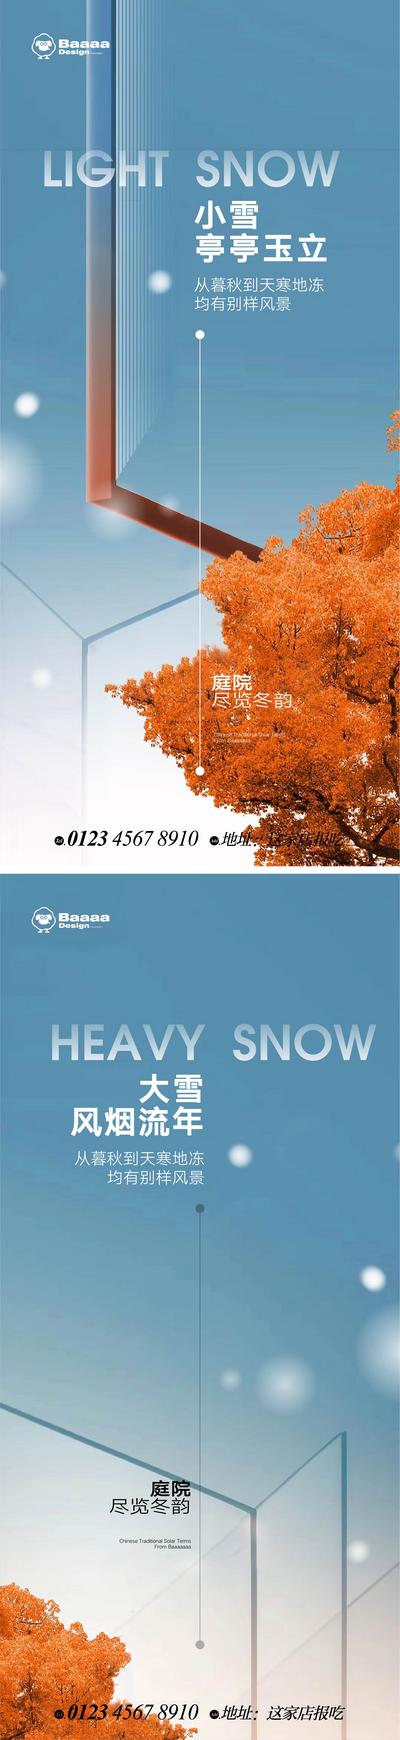 【南门网】广告 海报 节气 小雪 大雪 意境 精致 别墅 圈层 微单